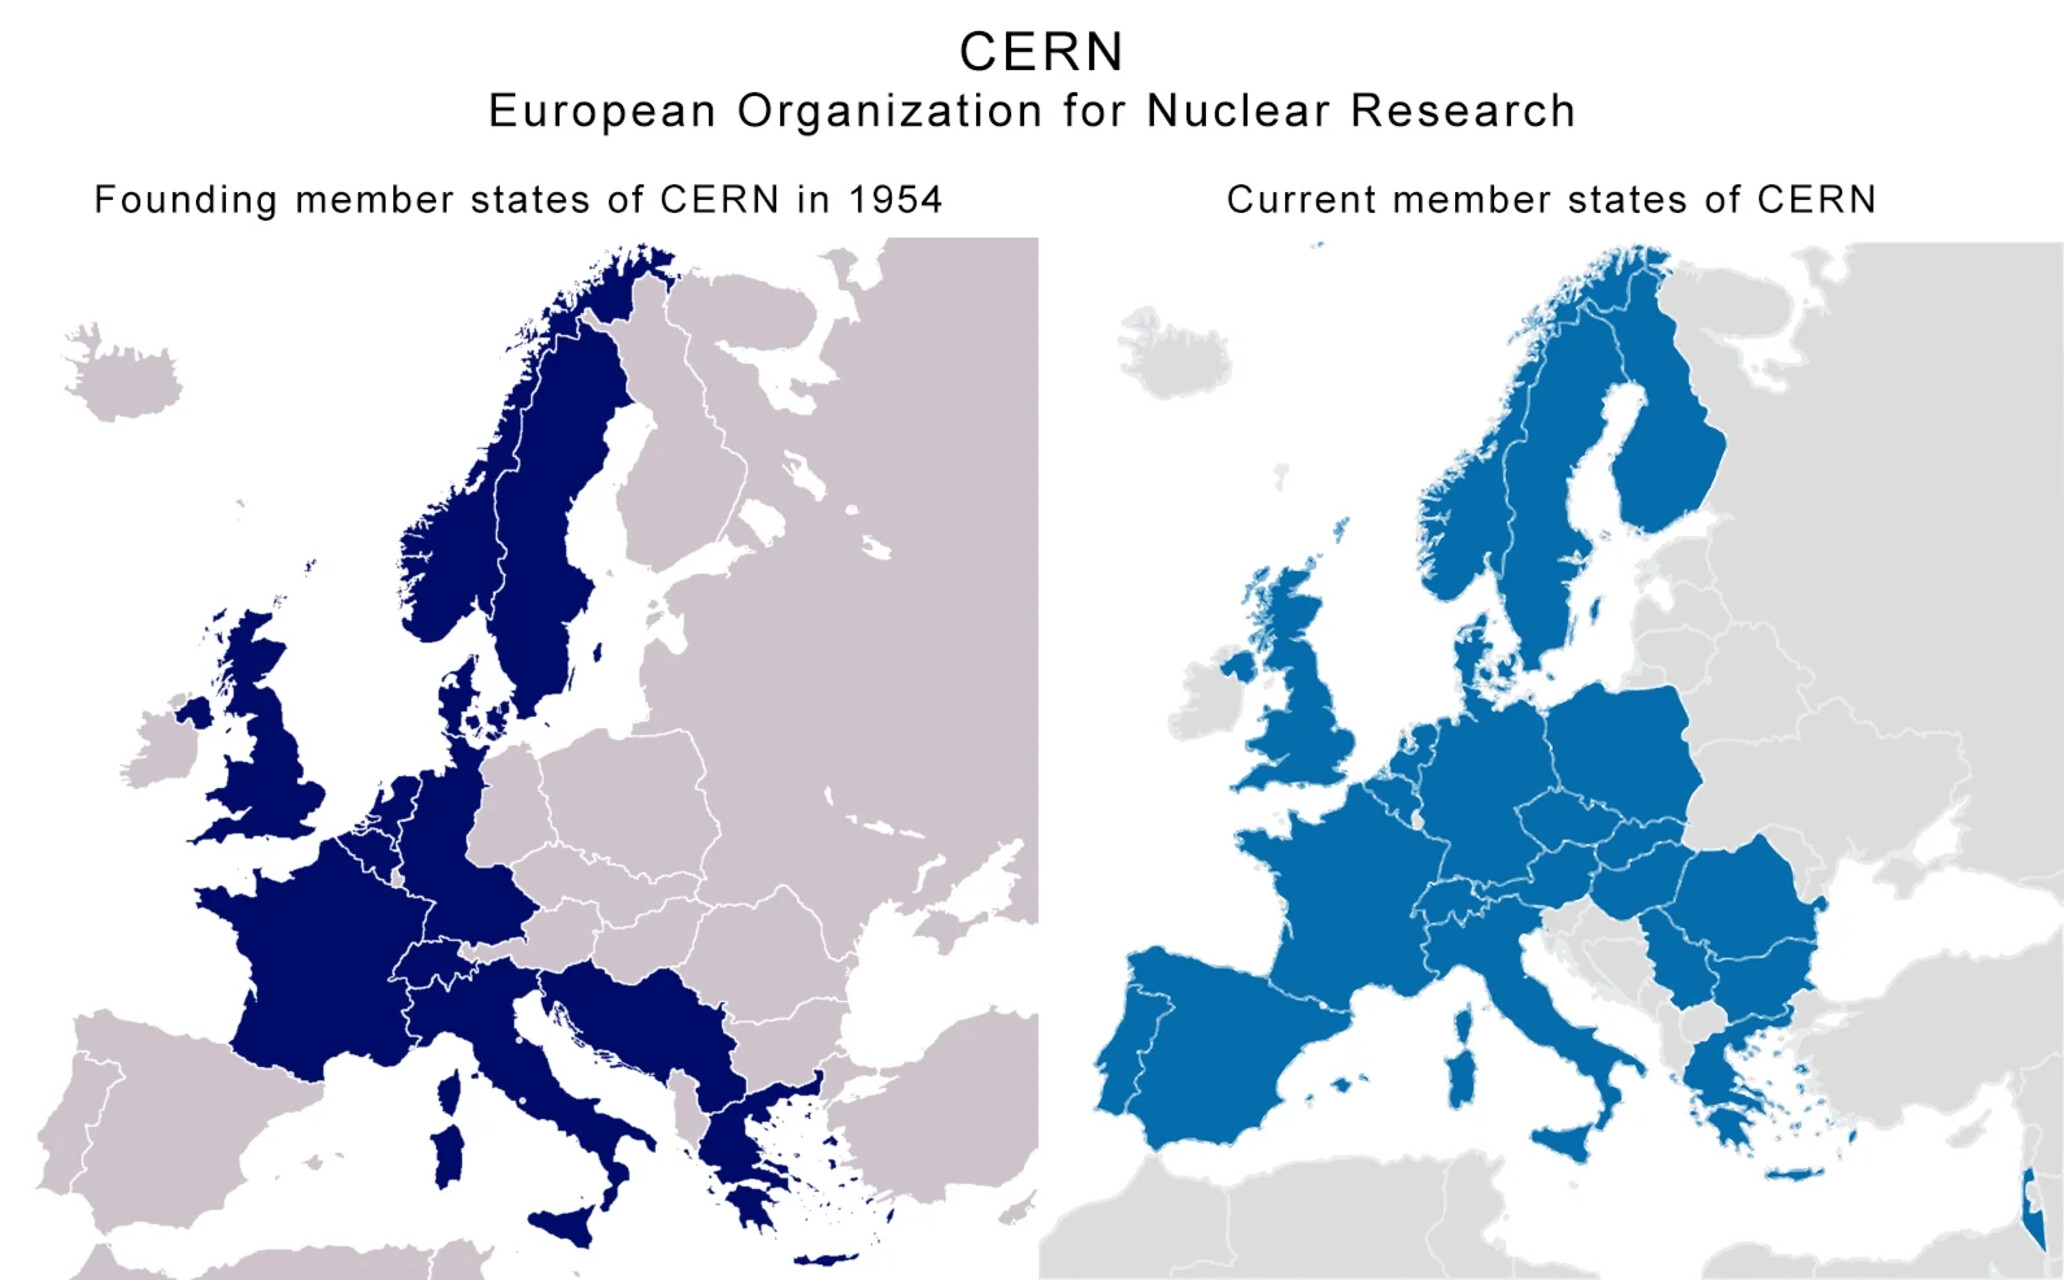 Brasil: dos mapas con una comparación entre los países fundadores y los actuales estados miembros del CERN